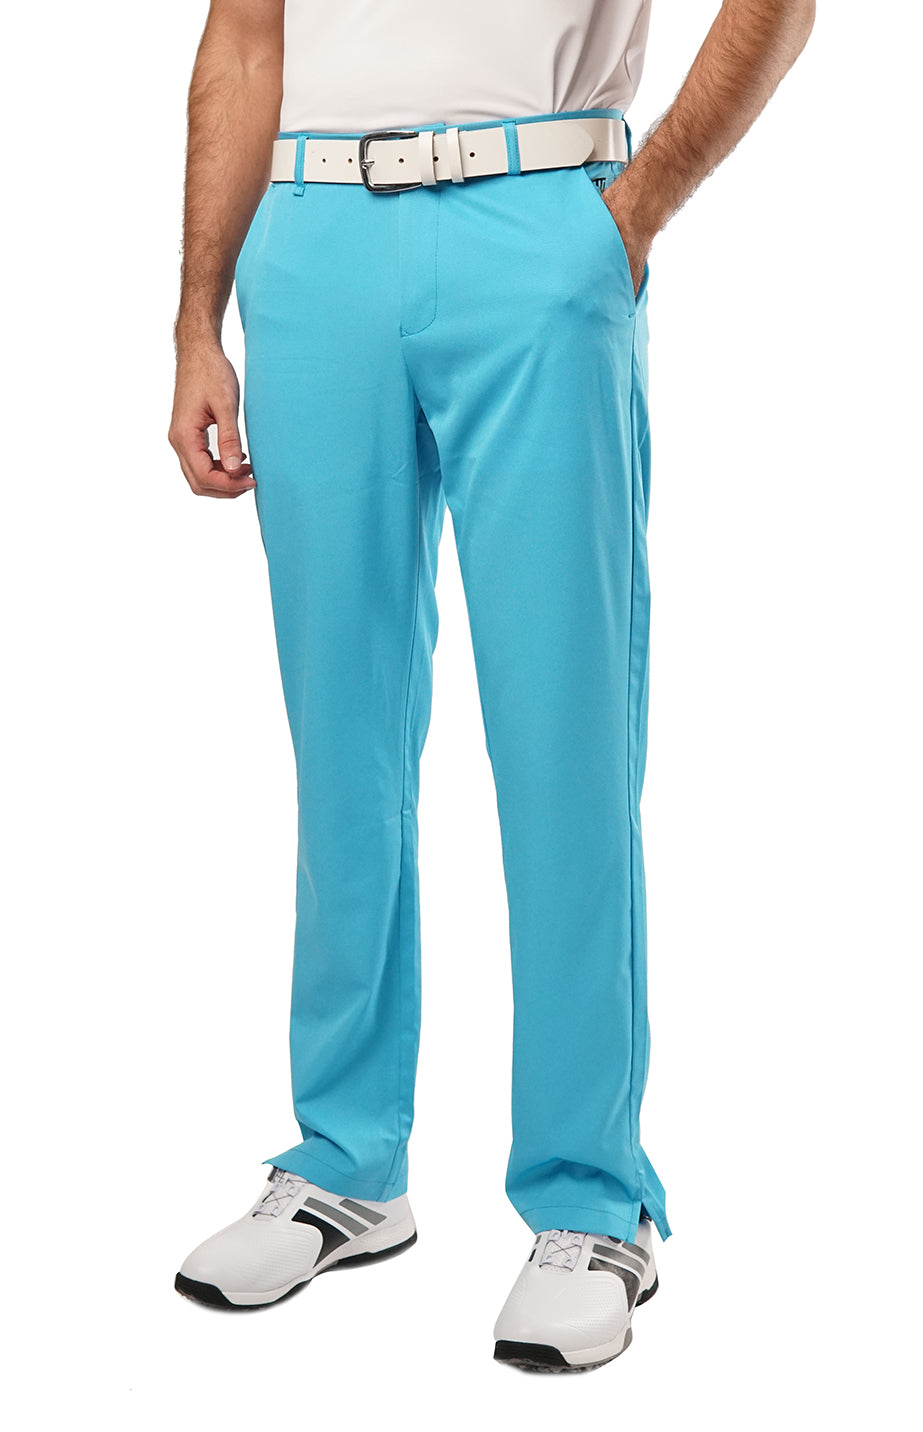 Men's Turquoise Blue Pants